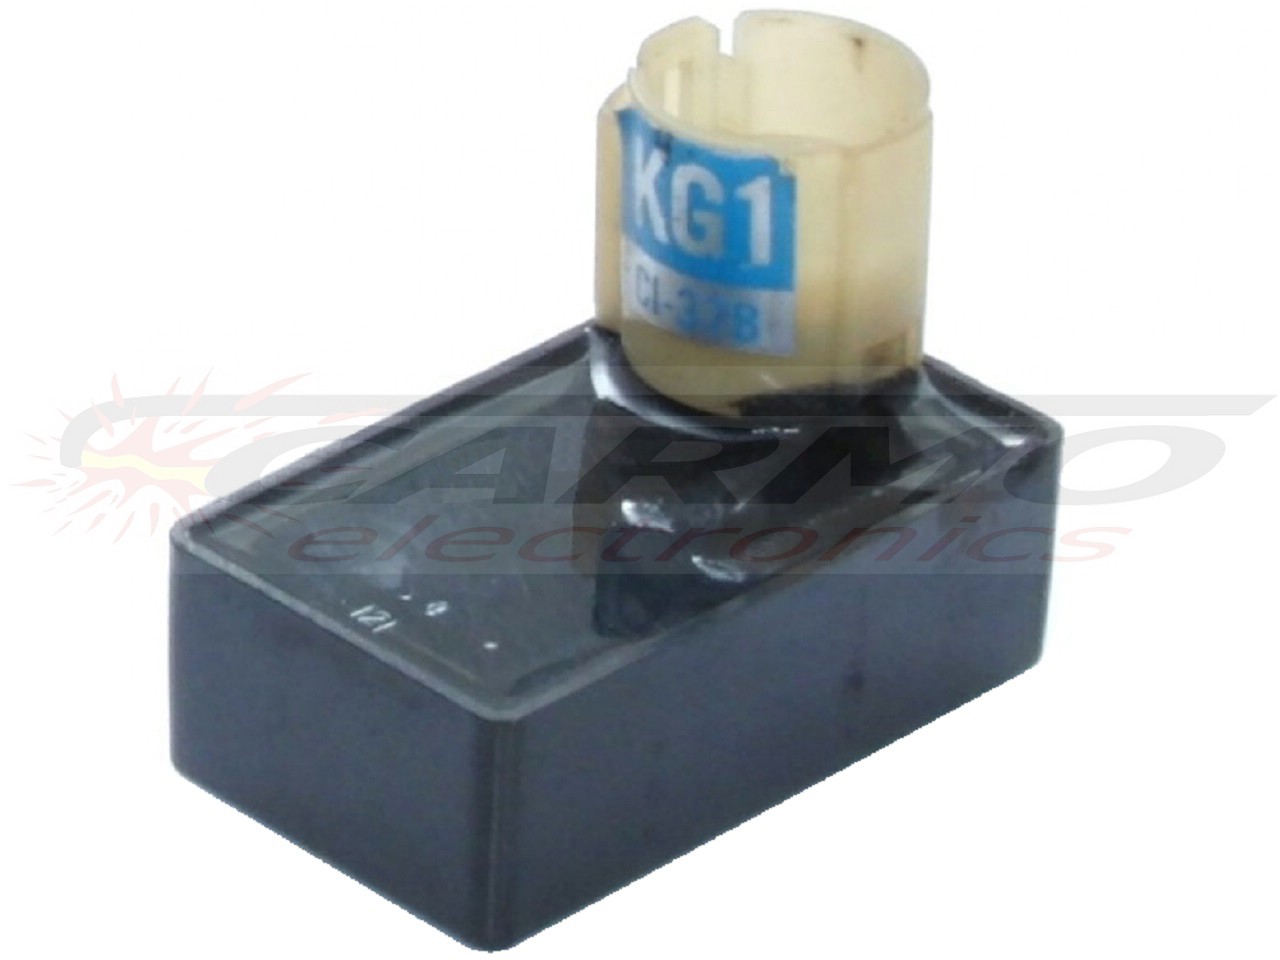 XL200 XL200R TCI CDI dispositif de commande boîte noire (KG1, CI-37B)